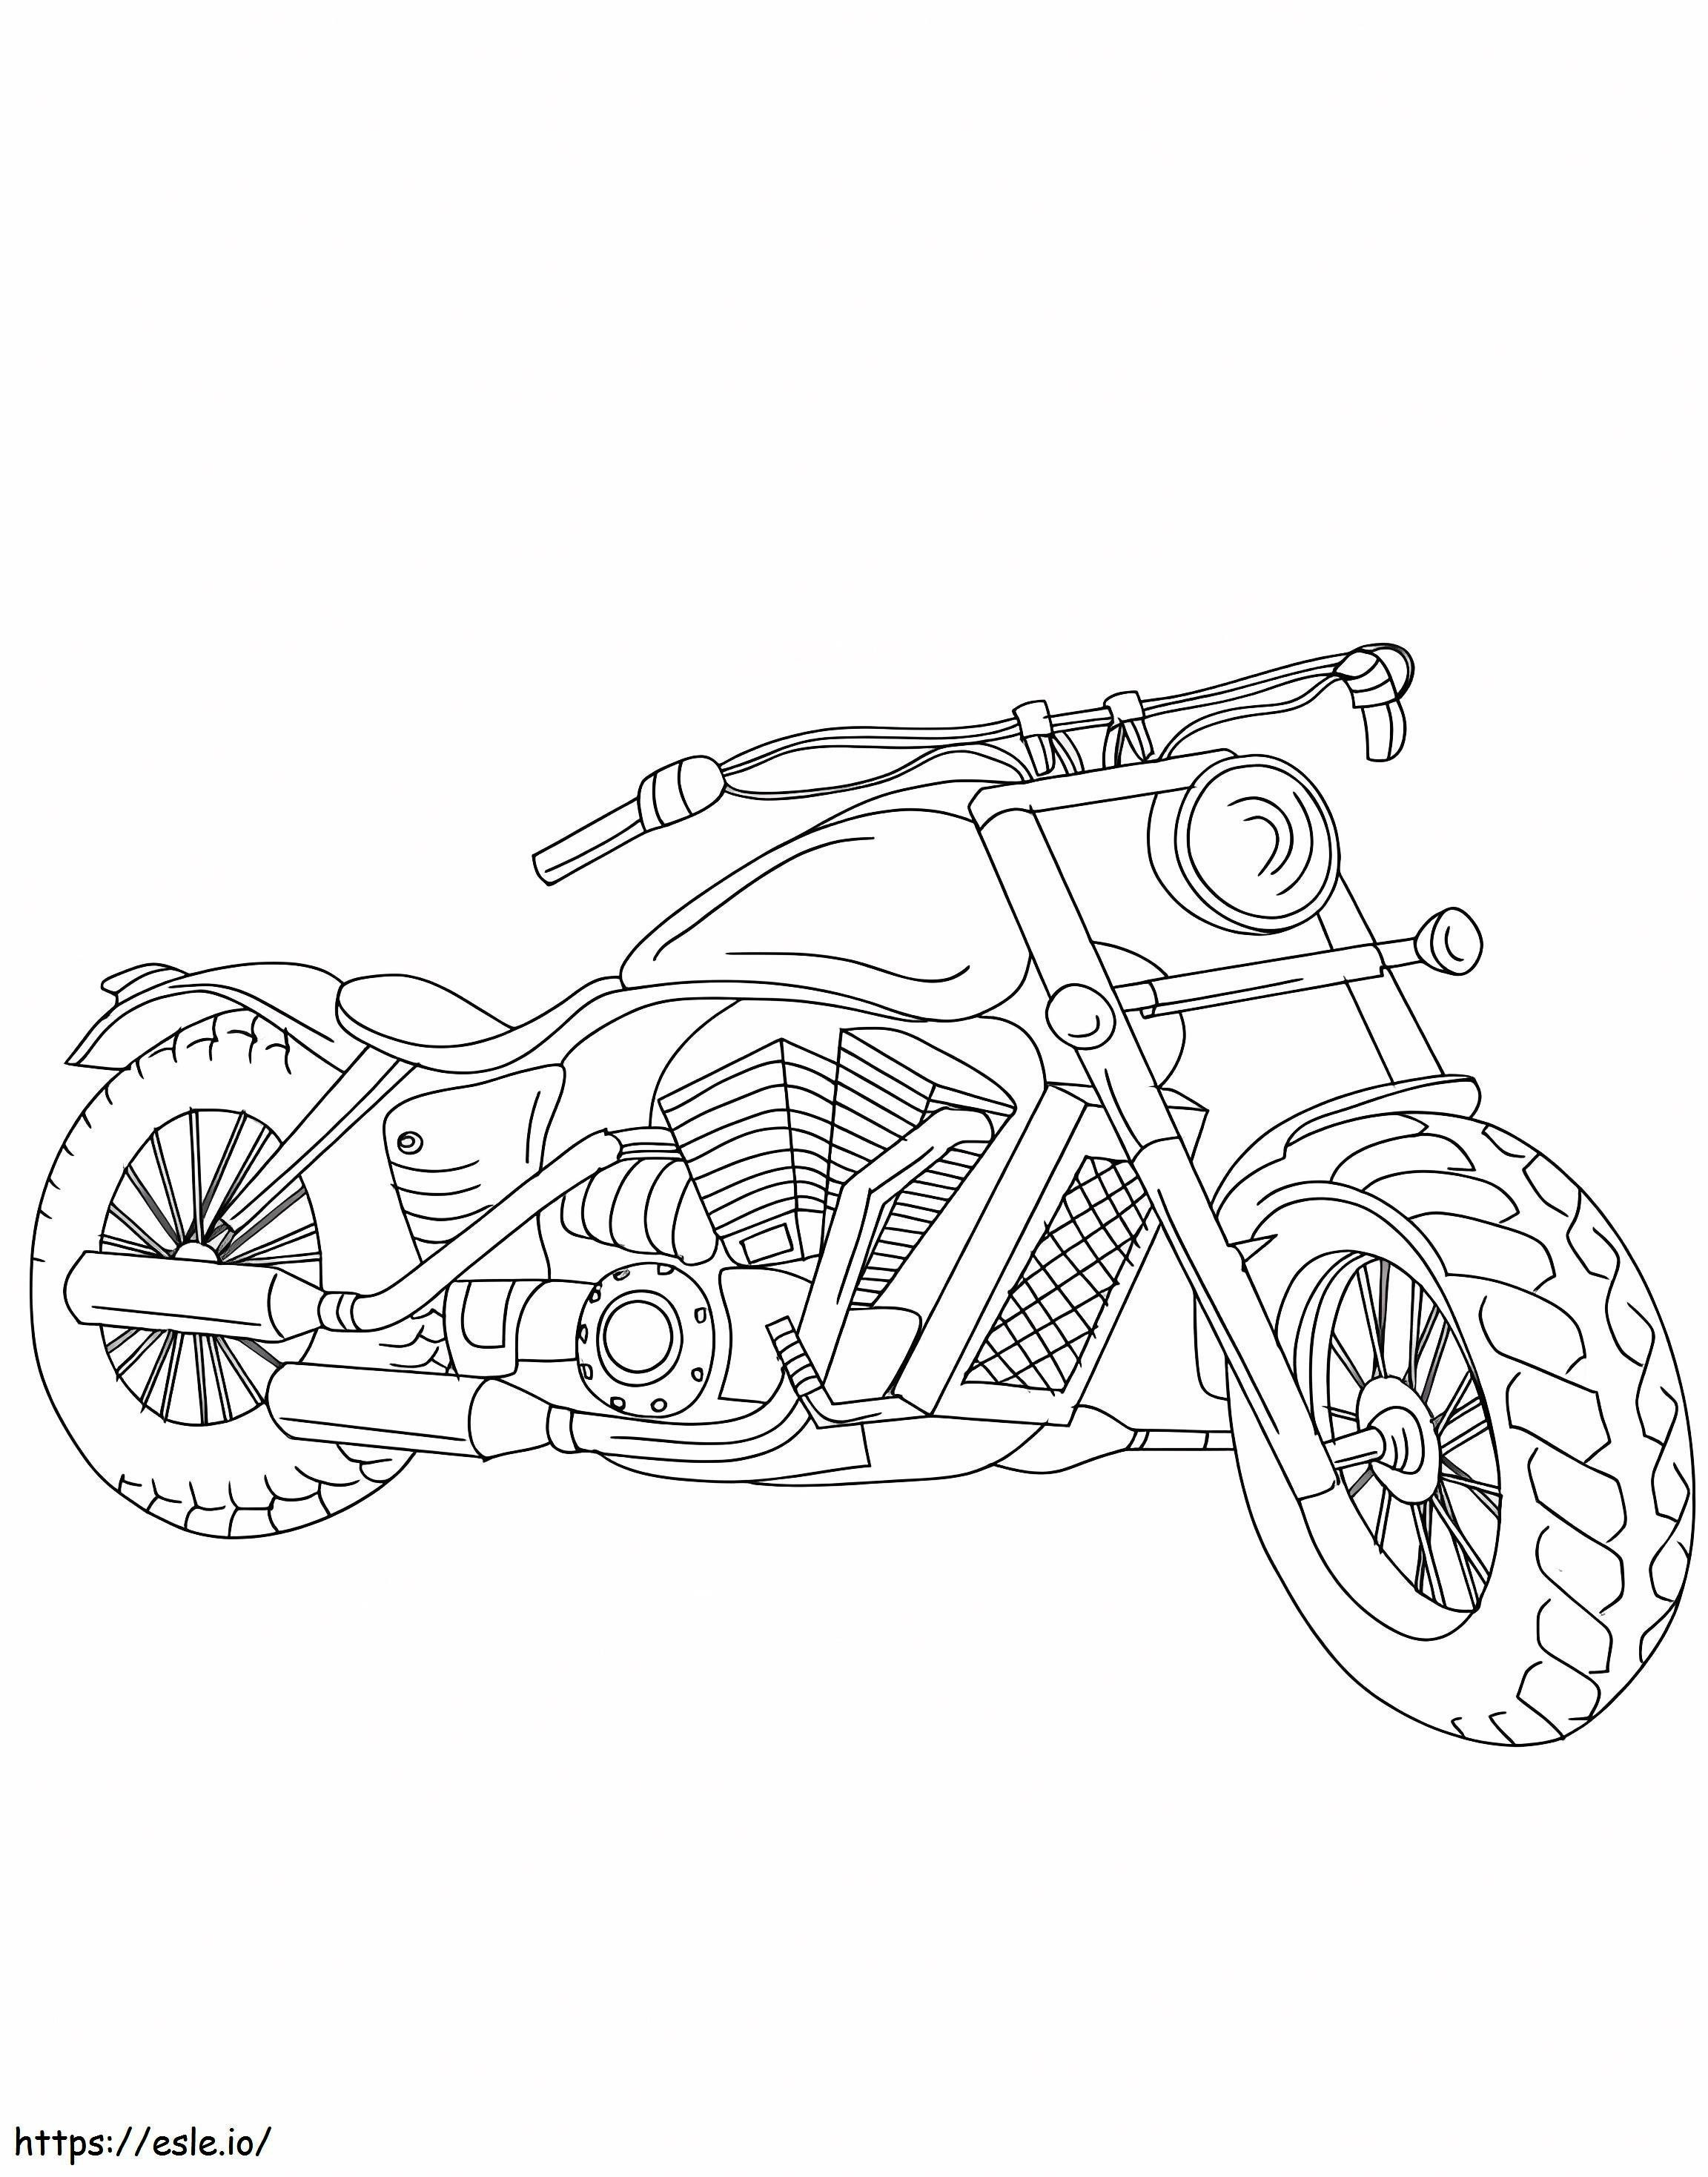 Motocicletta Harley Davidson gratuita da colorare